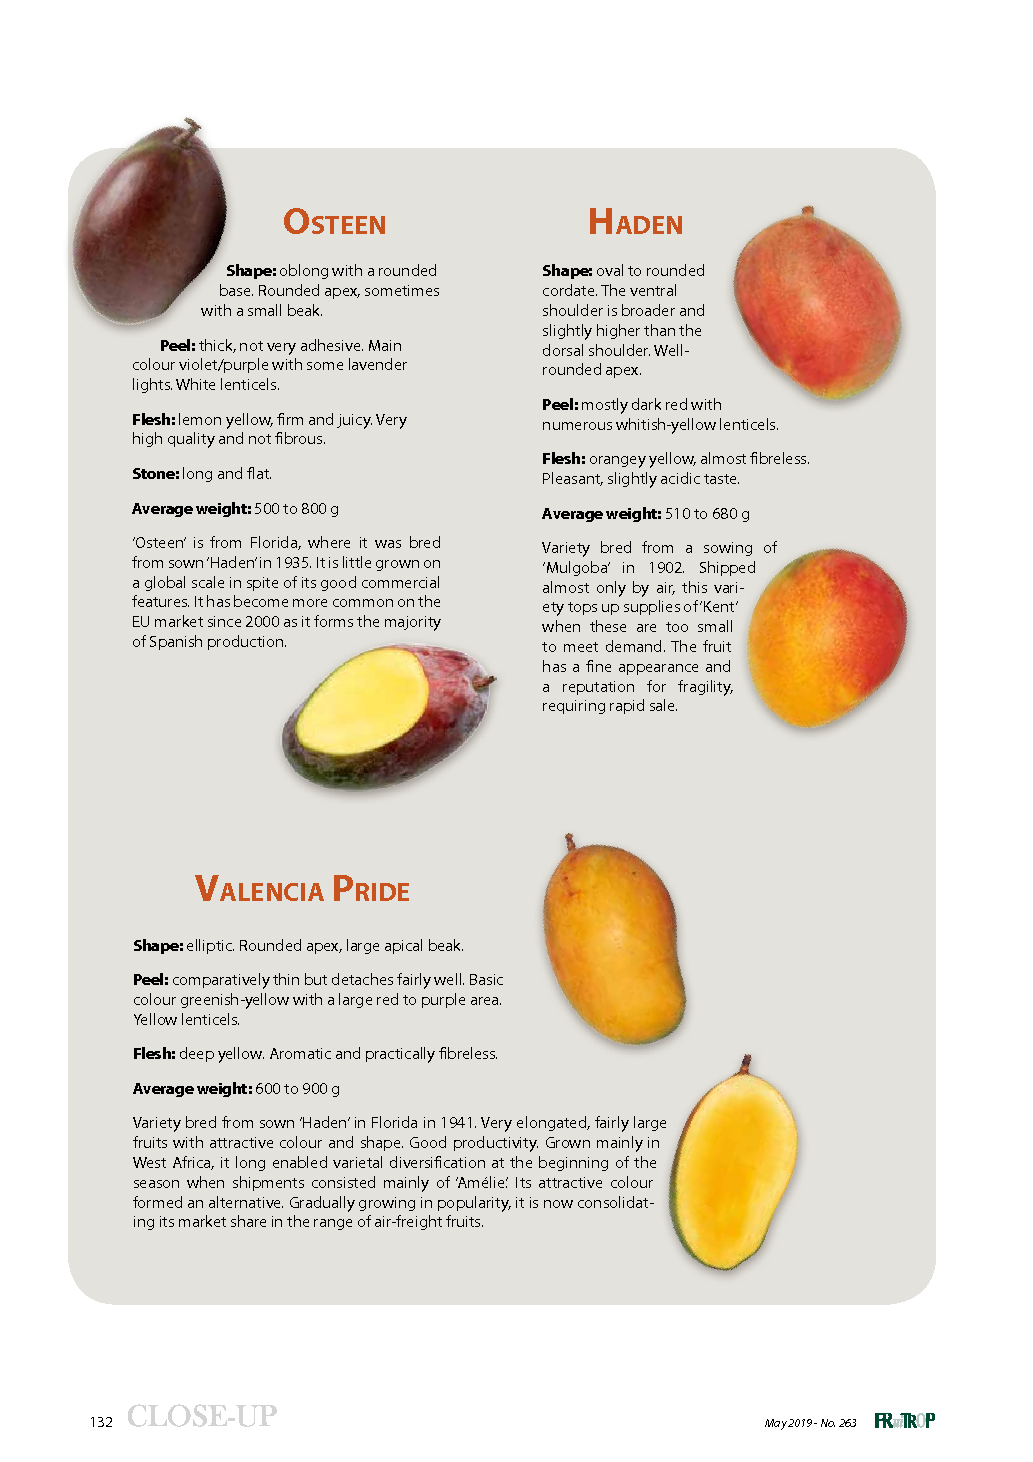 Main mango varieties